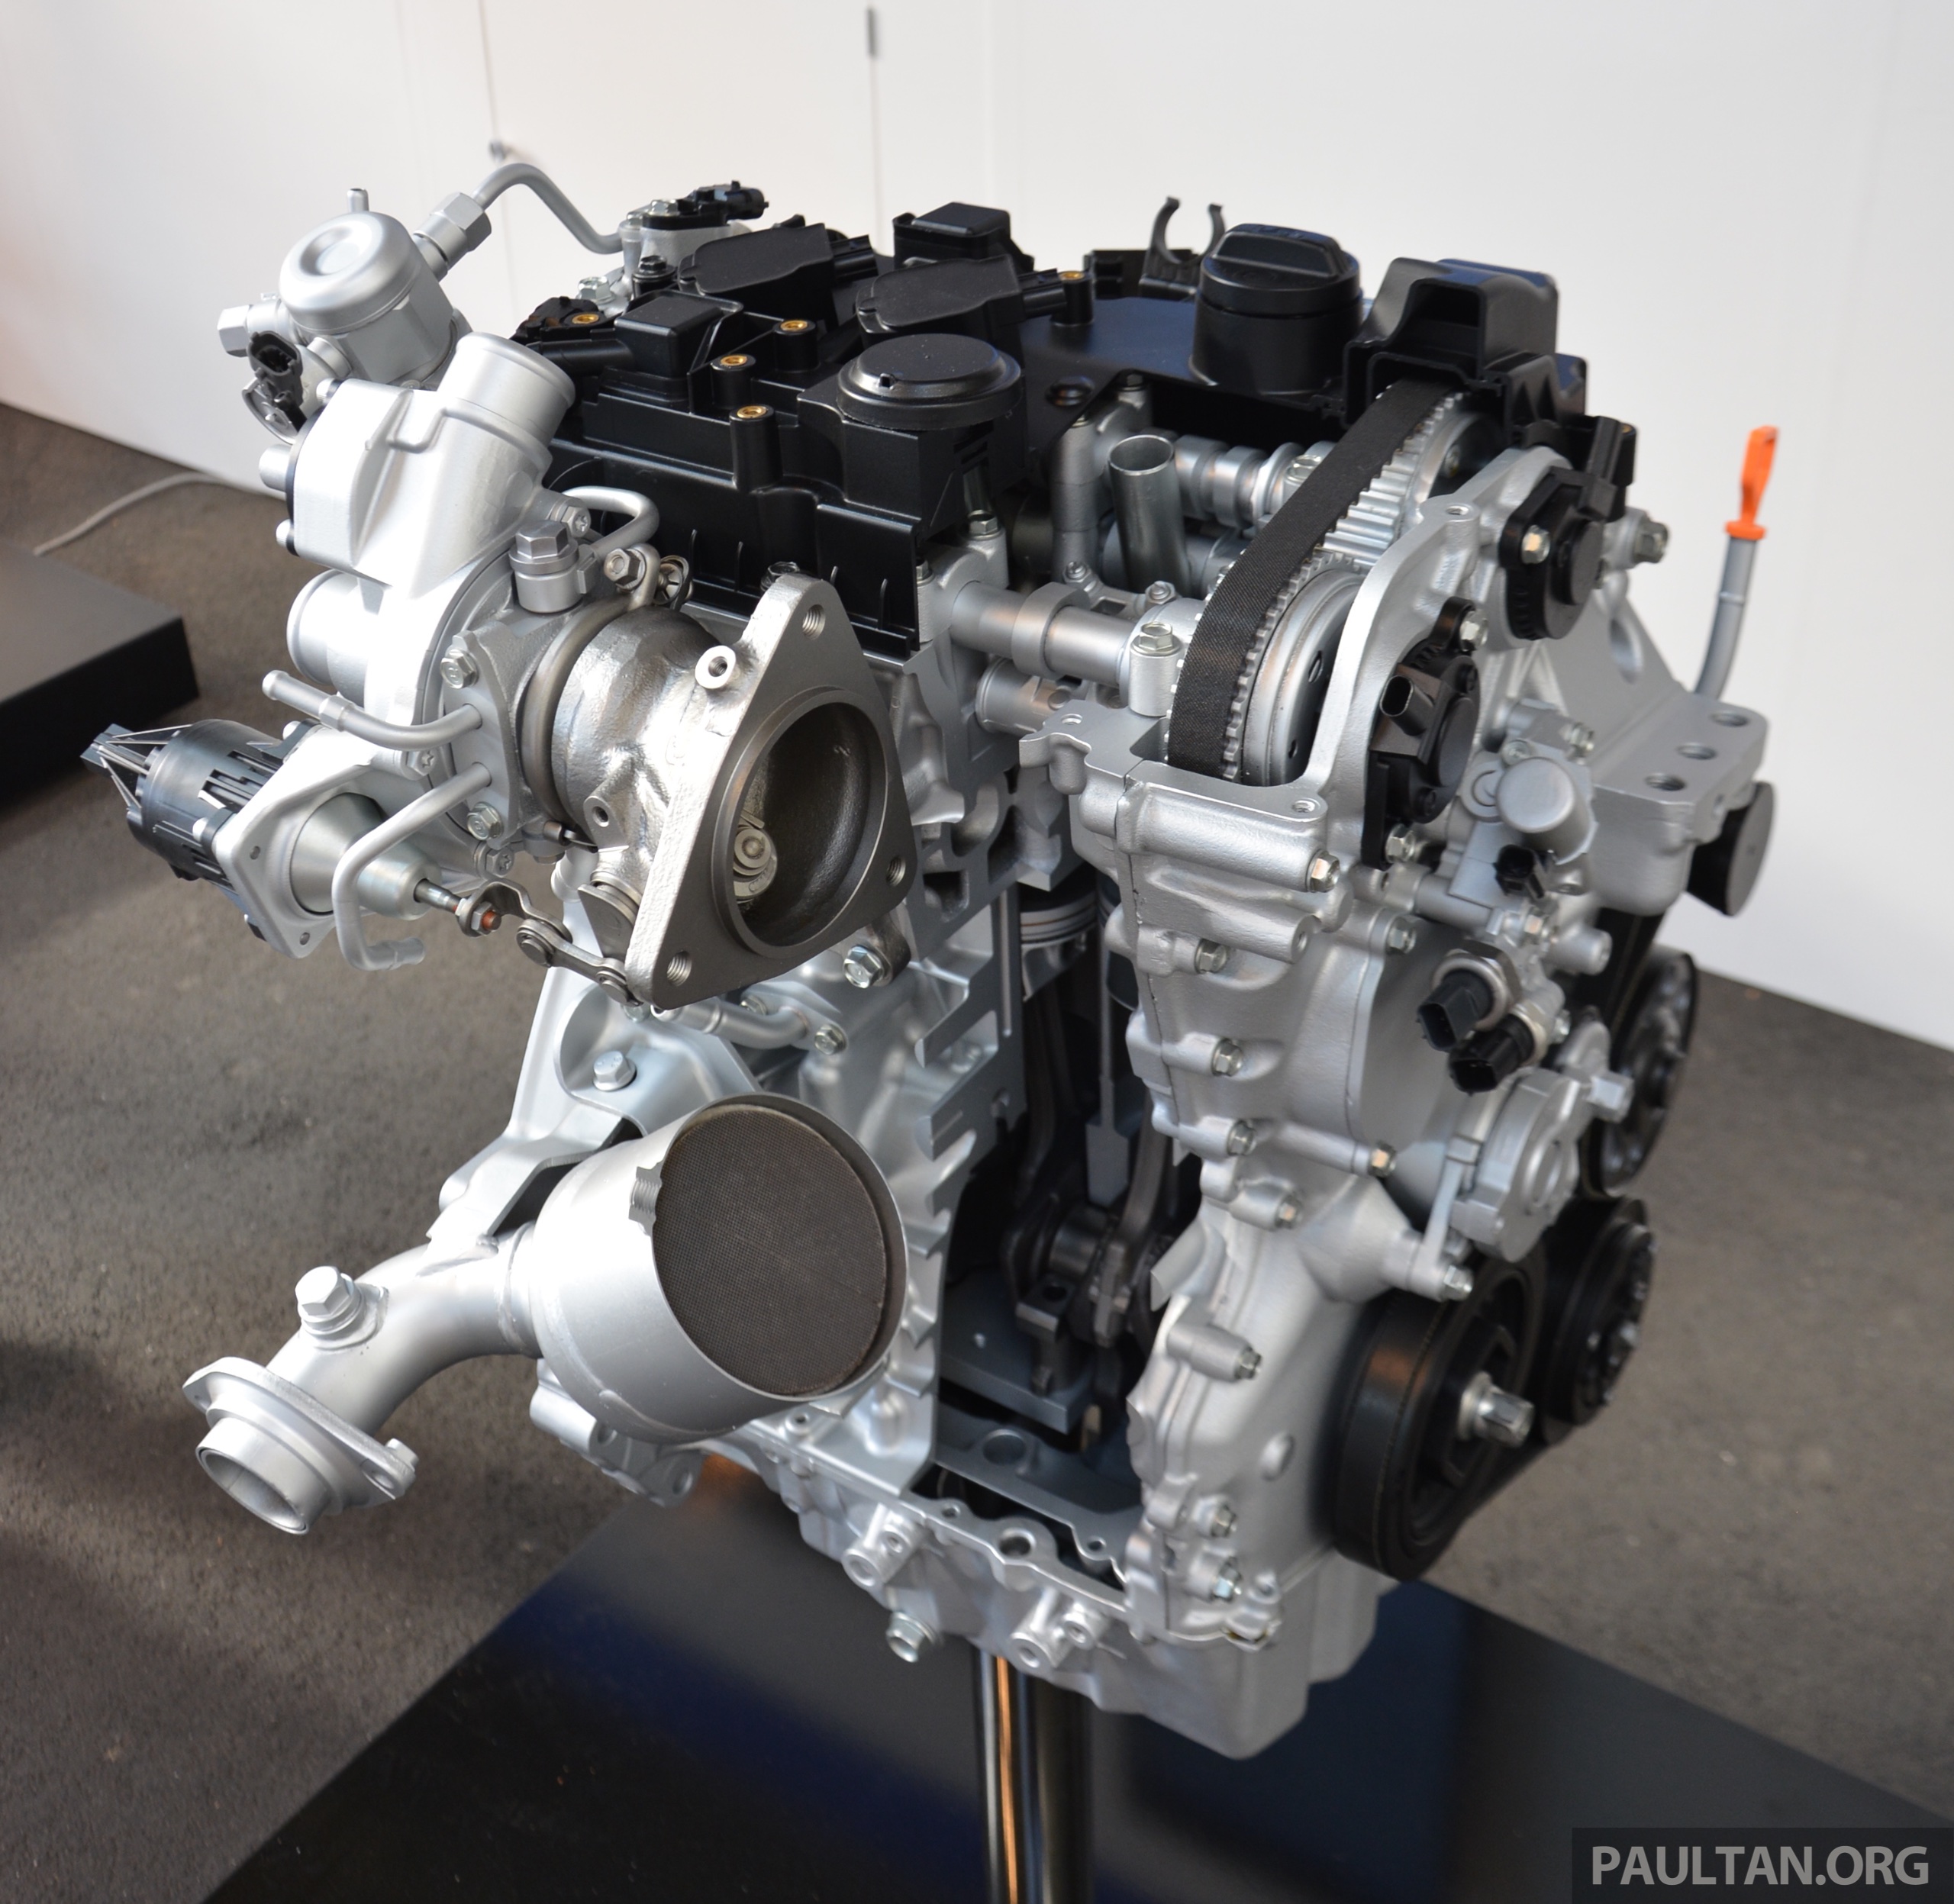 2017 Honda Civic for Europe 127 hp 1.0 litre VTEC Turbo